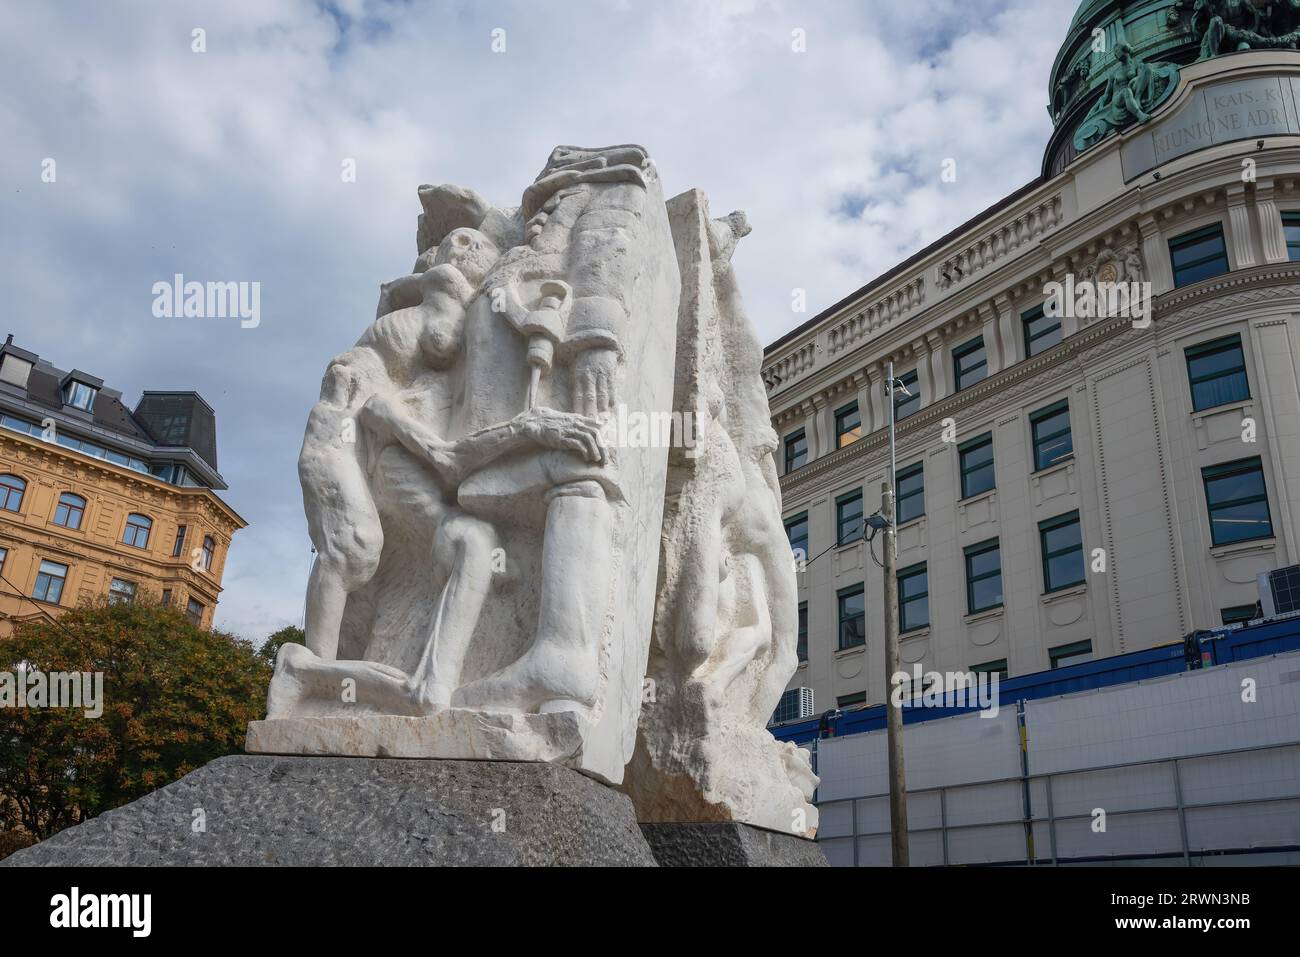 Porte de la violence Sculpture faisant partie du Mémorial contre la guerre et le fascisme par Alfred Hrdlicka à Albertinaplatz - Vienne, Autriche Banque D'Images